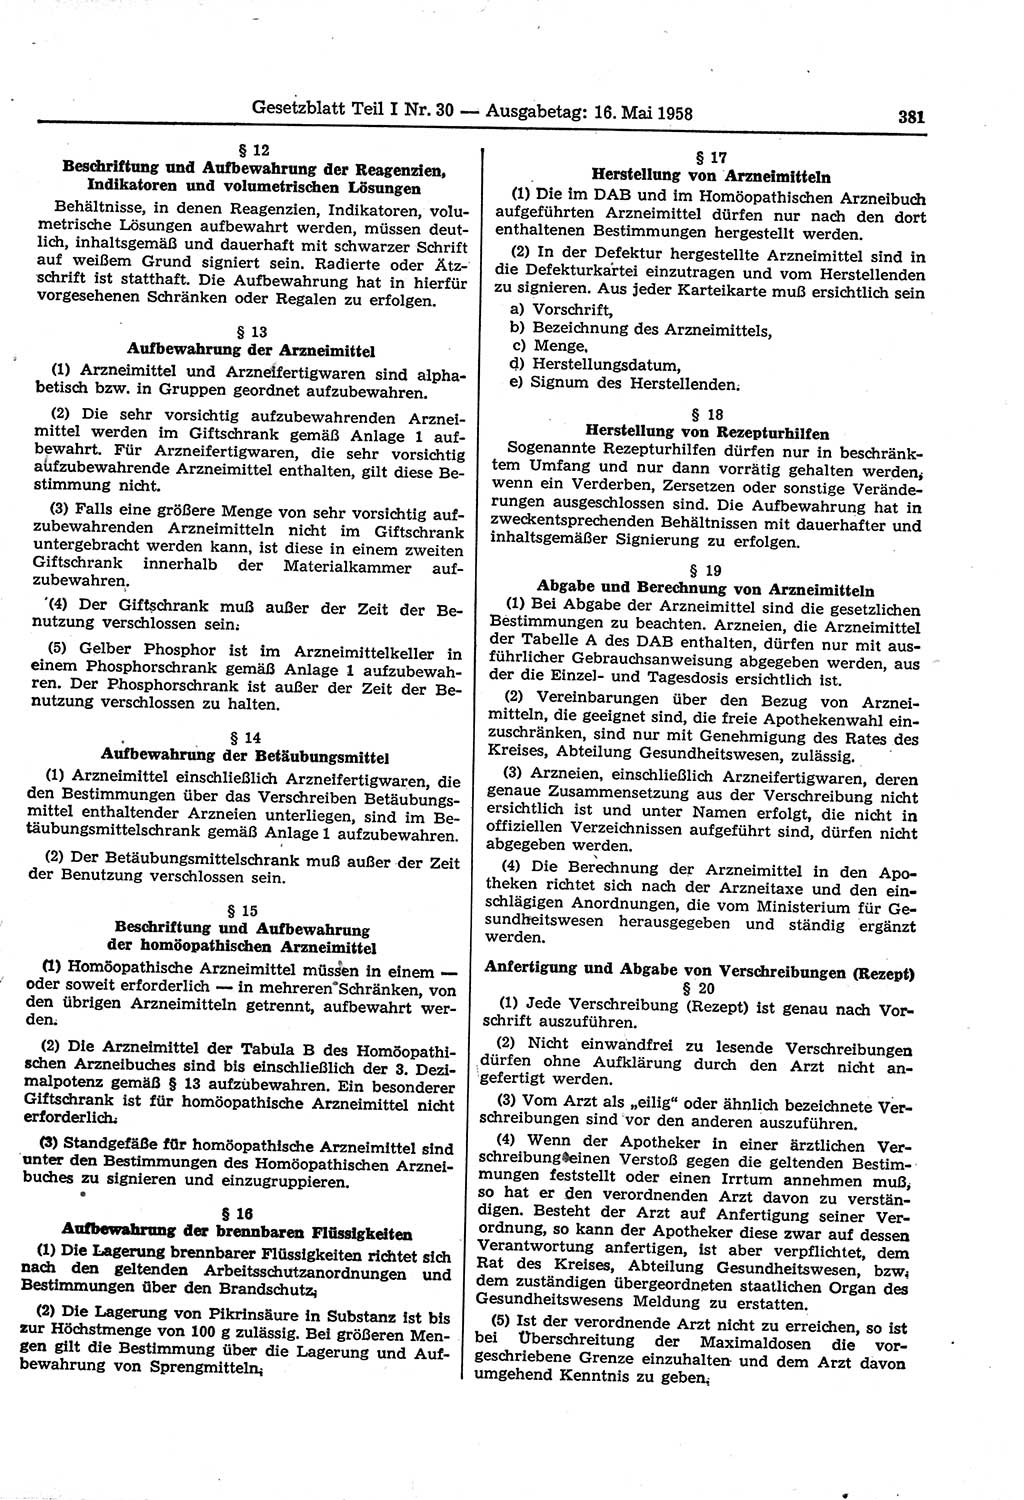 Gesetzblatt (GBl.) der Deutschen Demokratischen Republik (DDR) Teil Ⅰ 1958, Seite 381 (GBl. DDR Ⅰ 1958, S. 381)